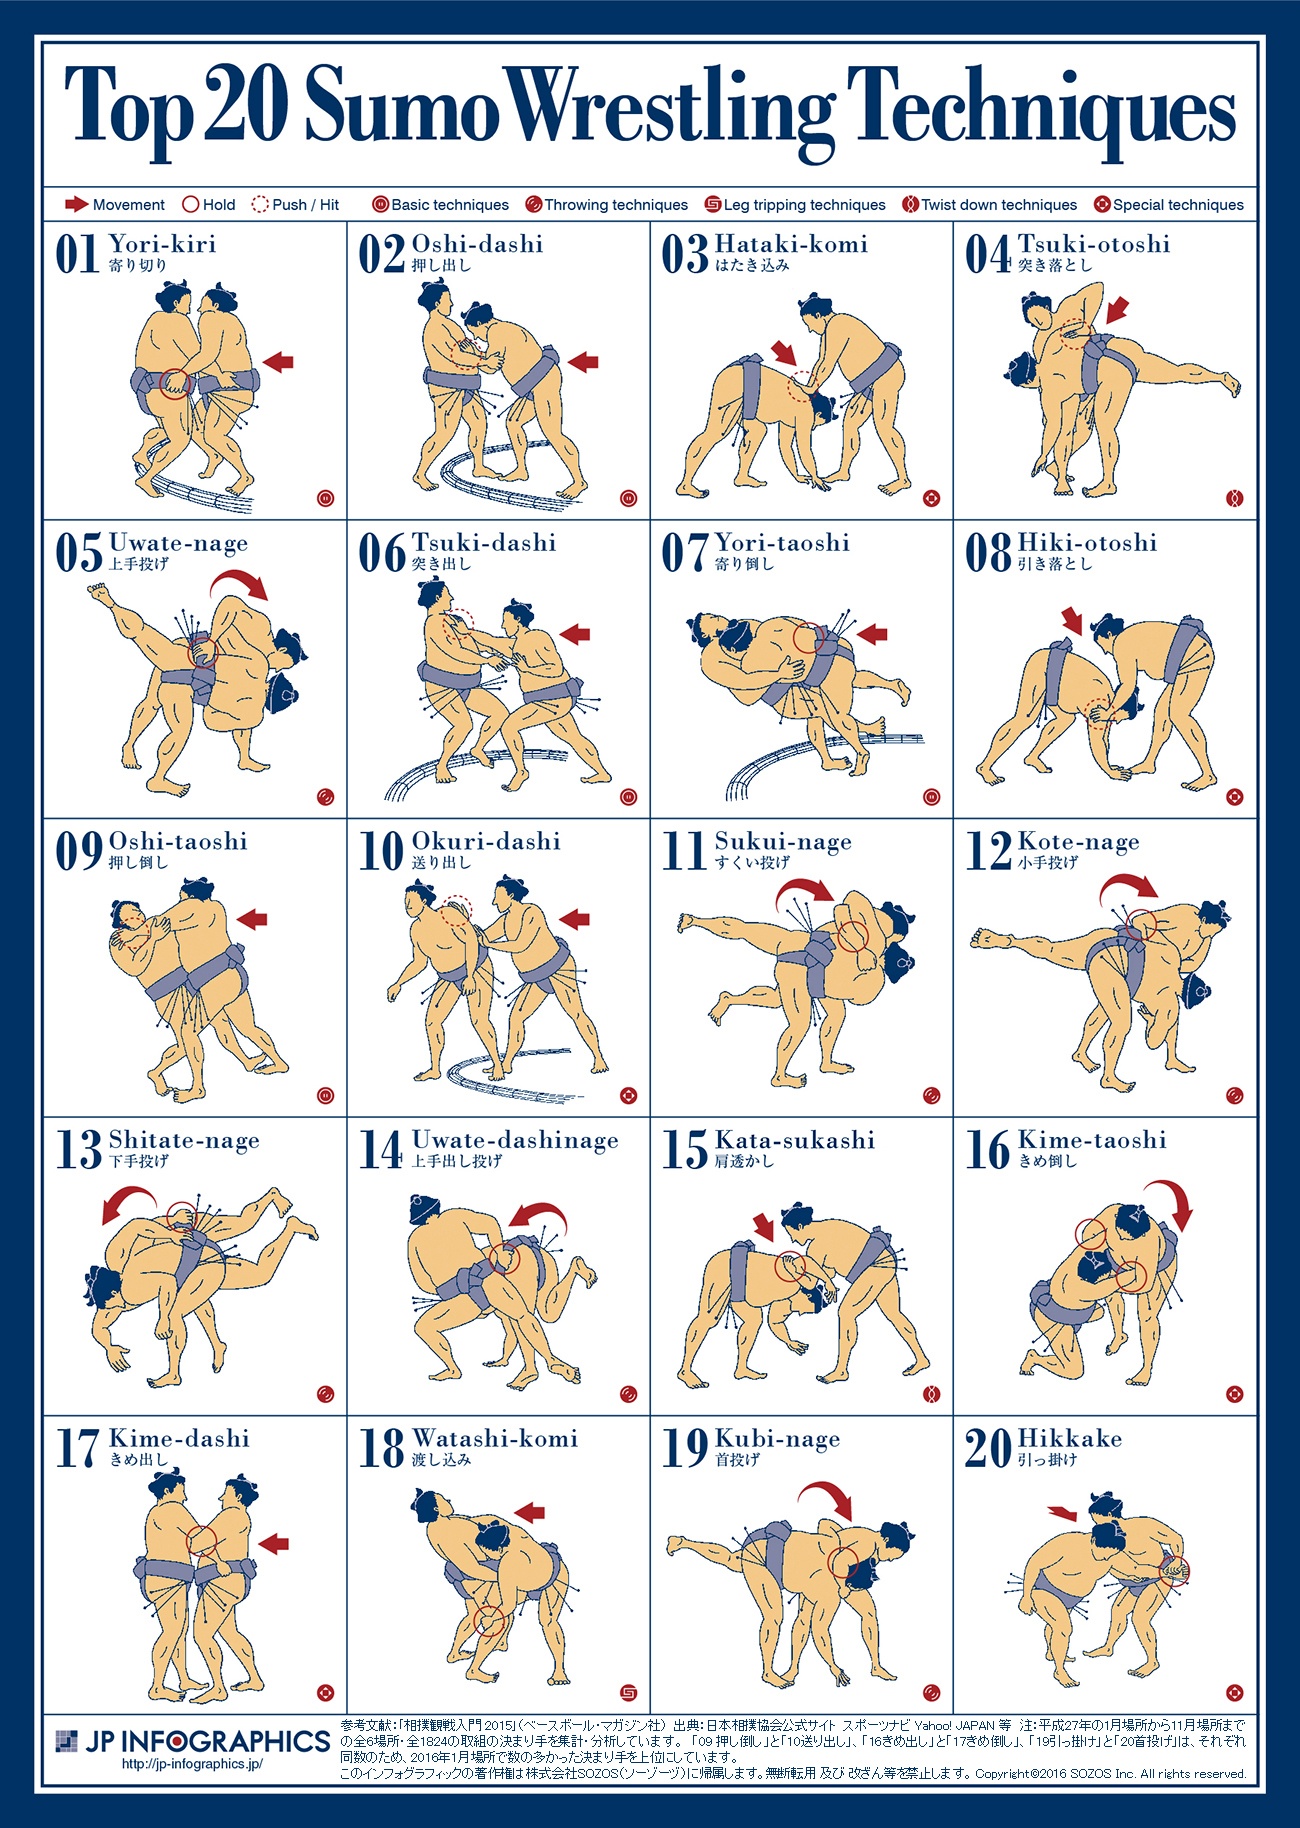 インフォグラフィック：大相撲観戦者必見。取組の半分は2種類の技（決まり手）で決着